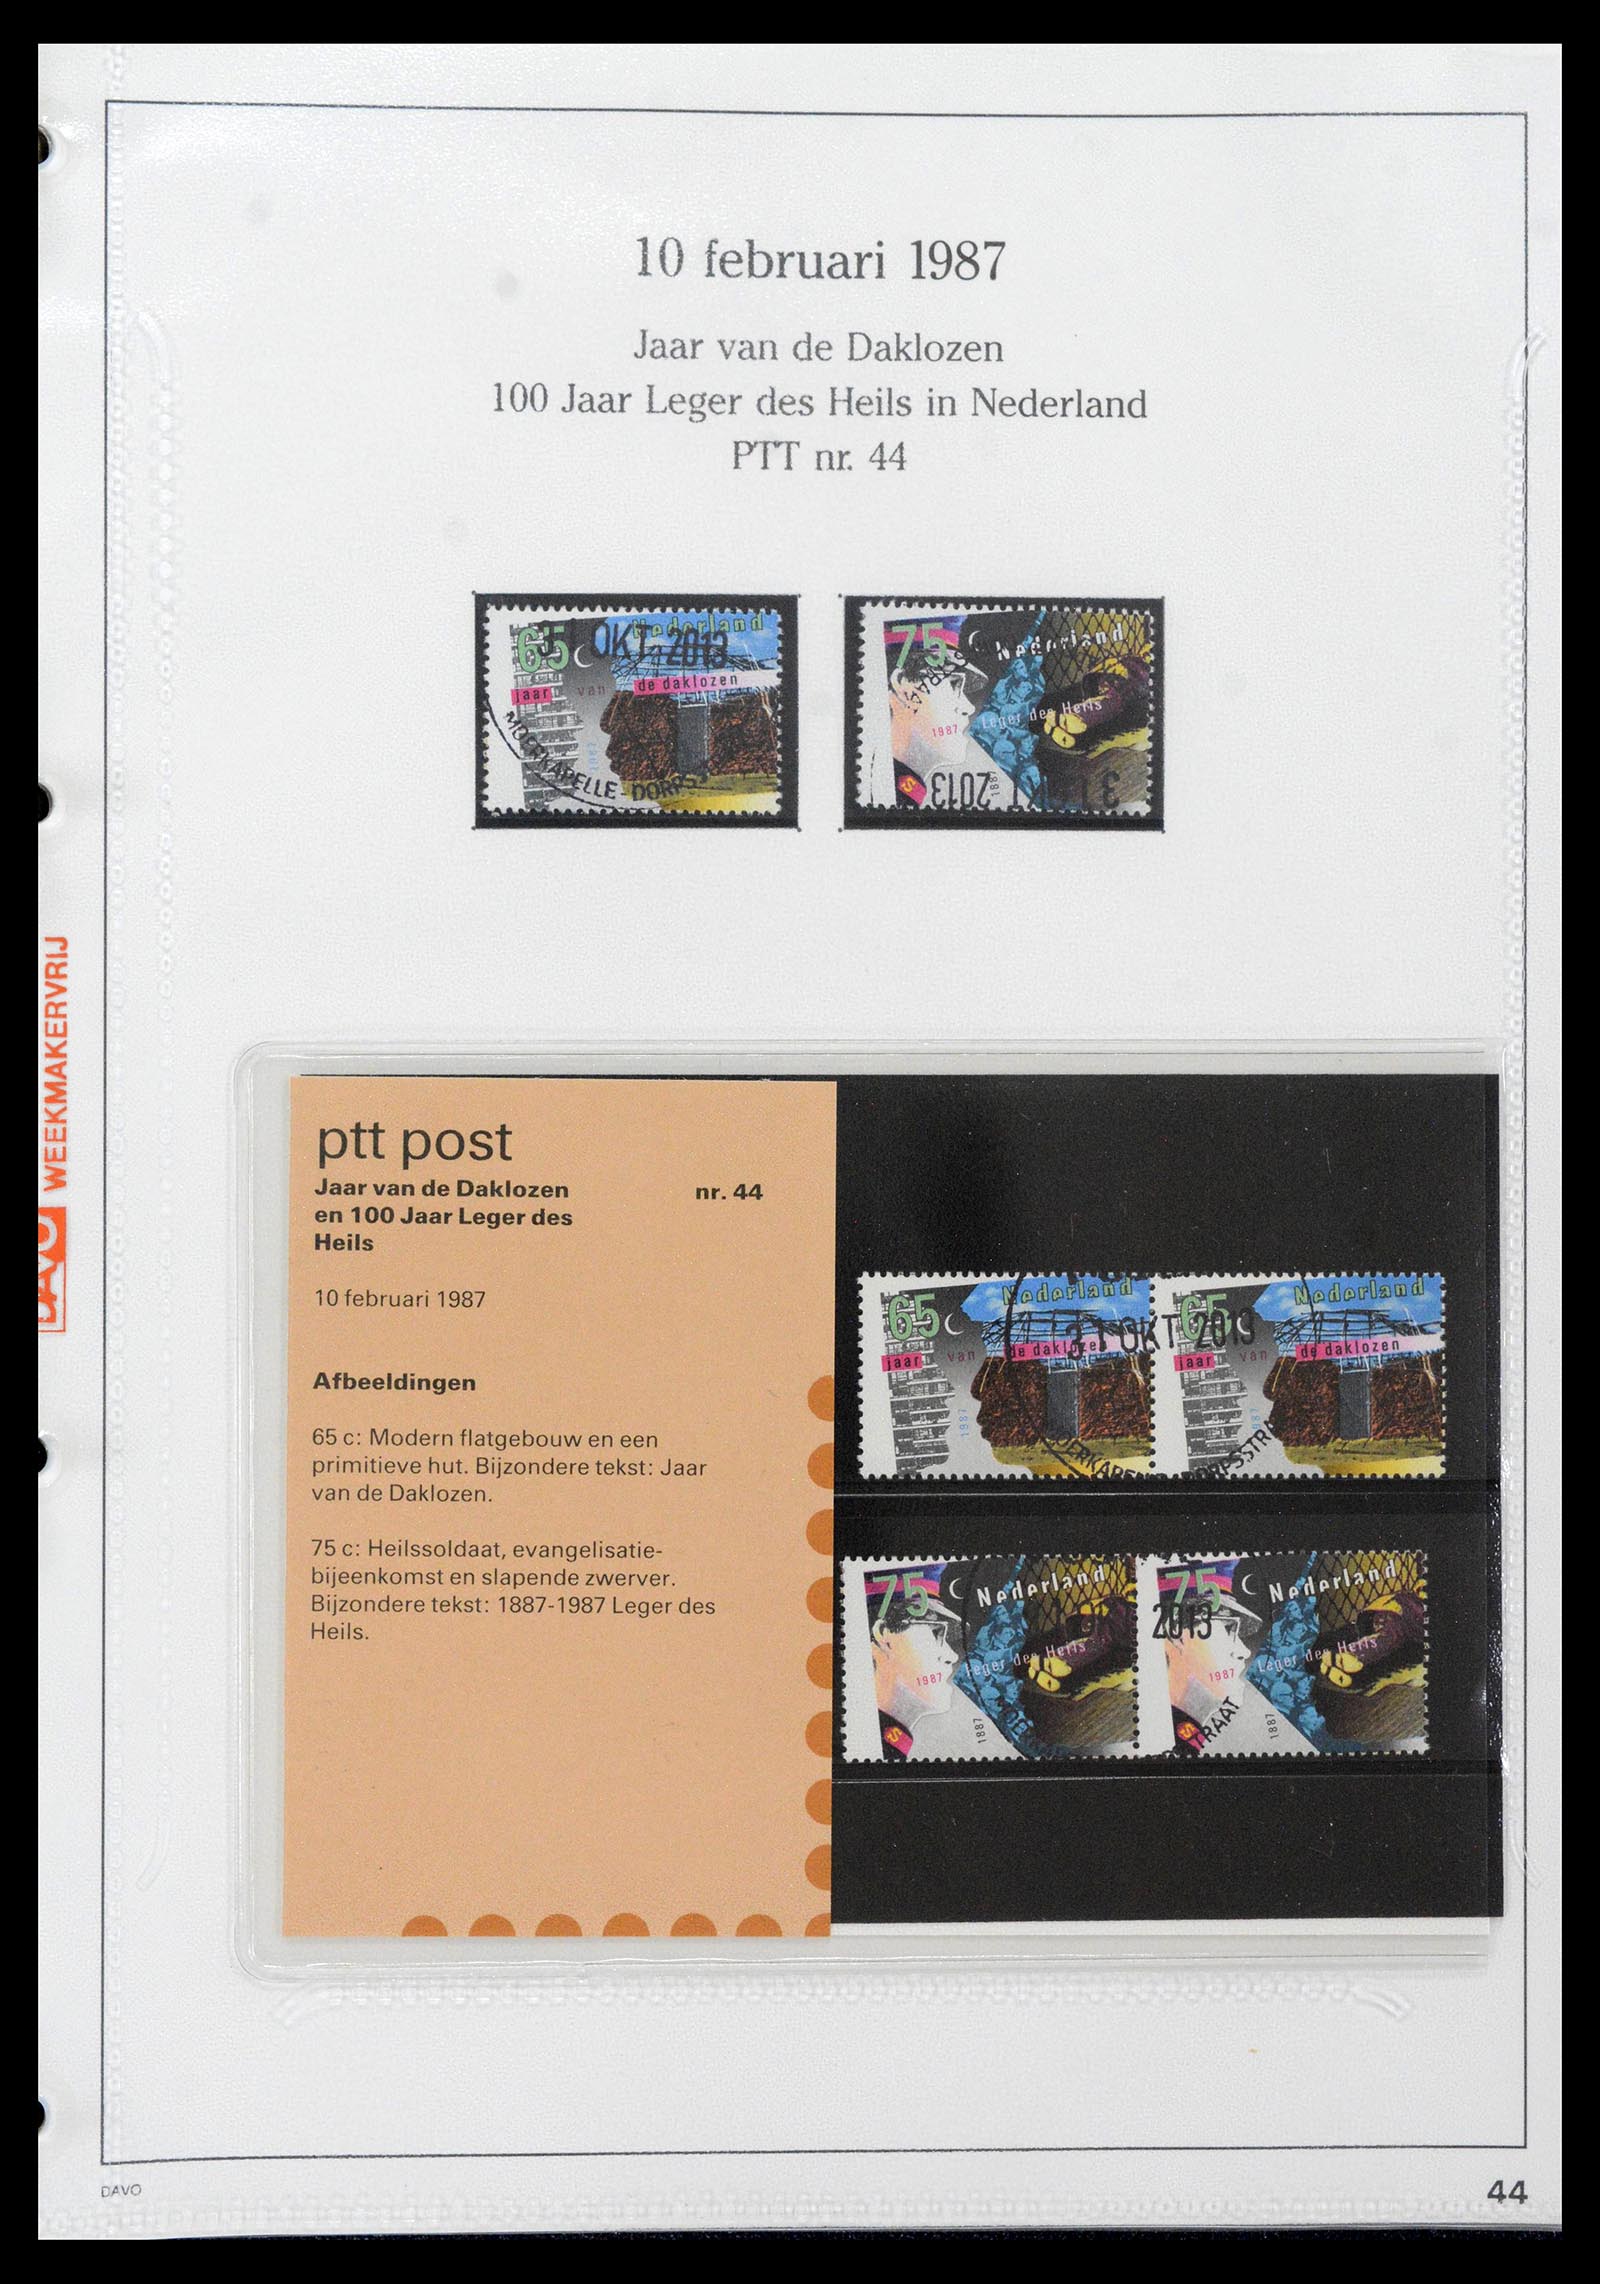 39121 0044 - Stamp collection 39121 Netherlands presentationpacks 1982-2001.